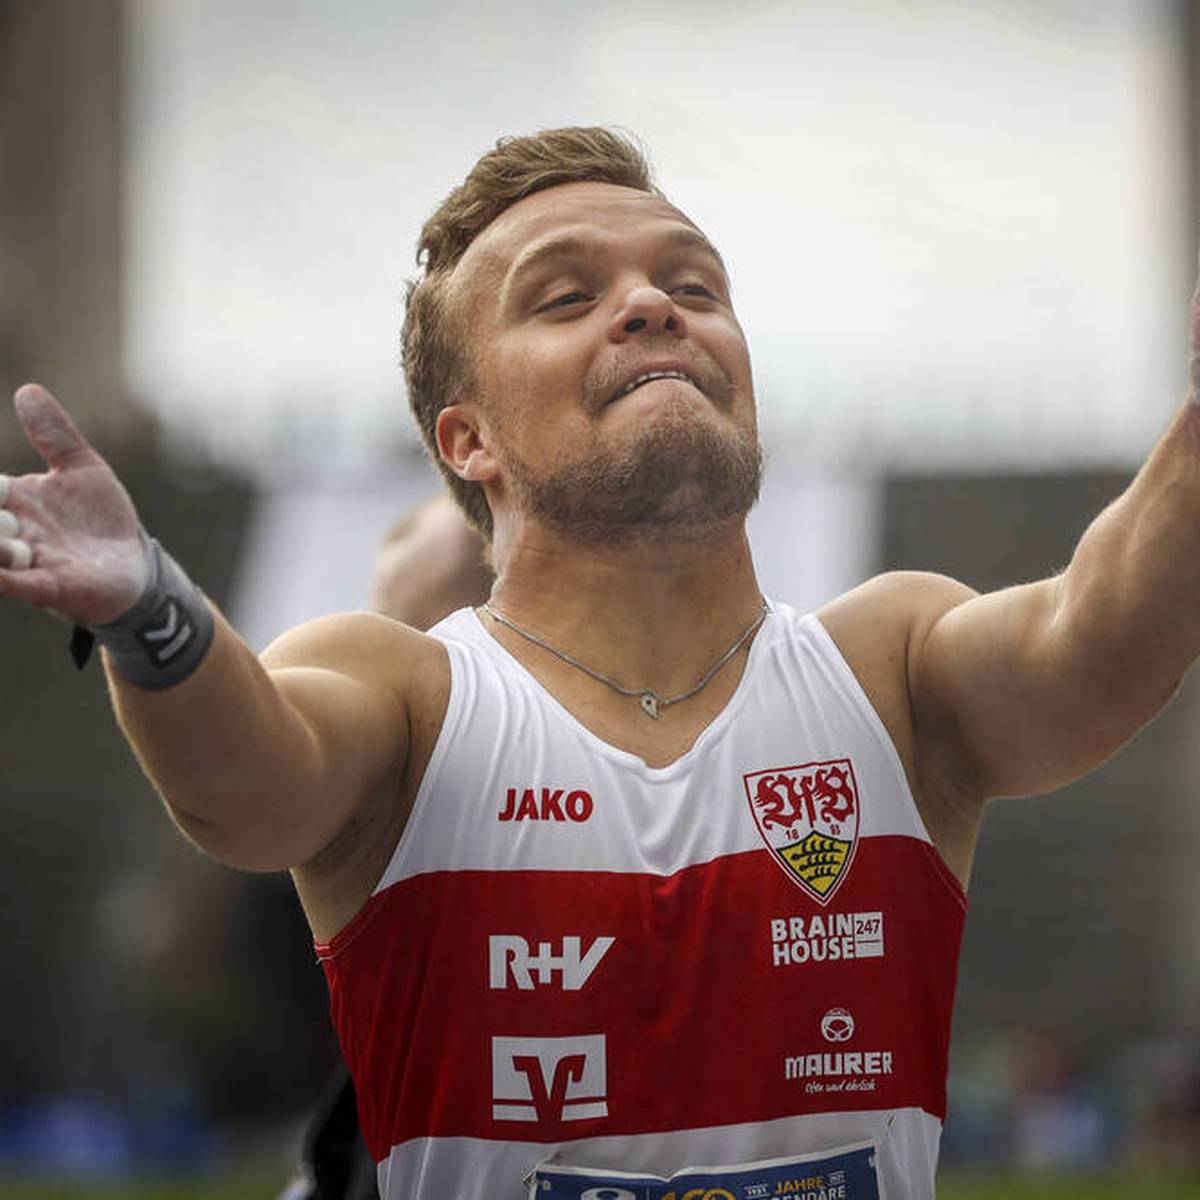 Paralympics-Sieger Niko Kappel verbessert bei den Werfertagen in Halle den Weltrekord im Kugelstoßen der Kleinwüchsigen um stolze 63 Zentimeter.